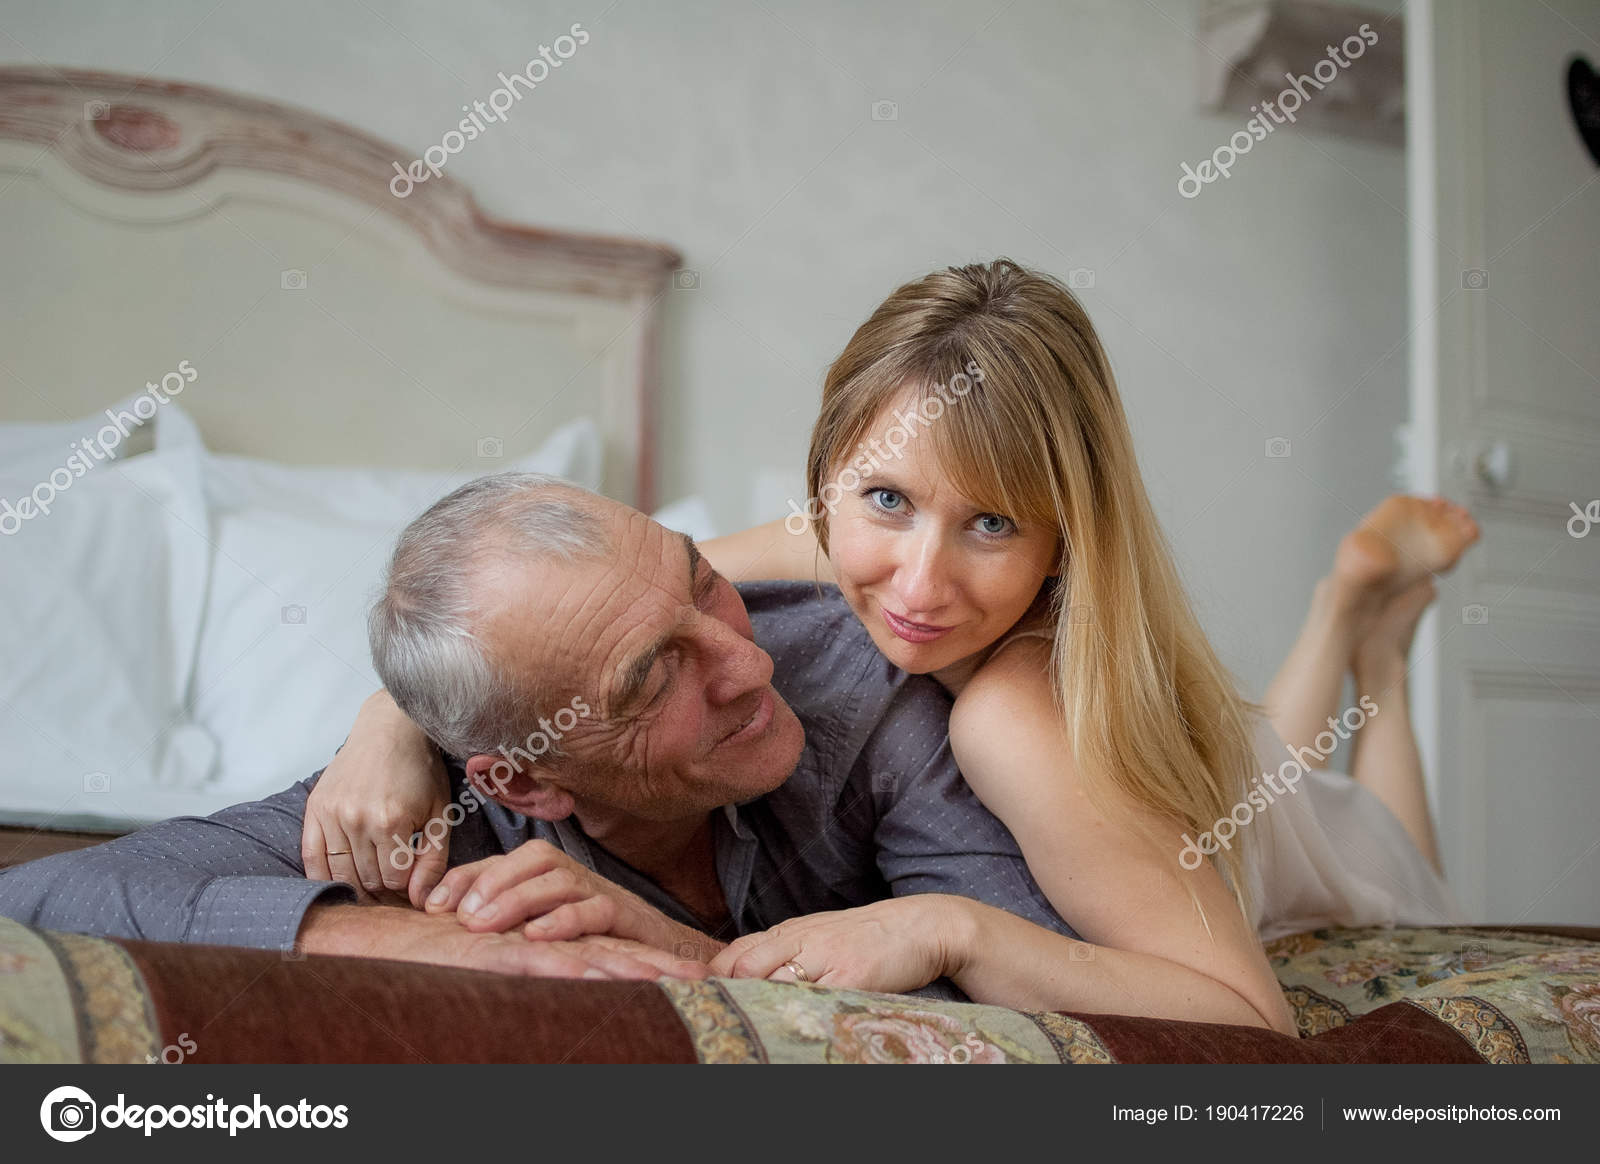 Пожилой мужчина нашел себе молодую сексапильную любовницу